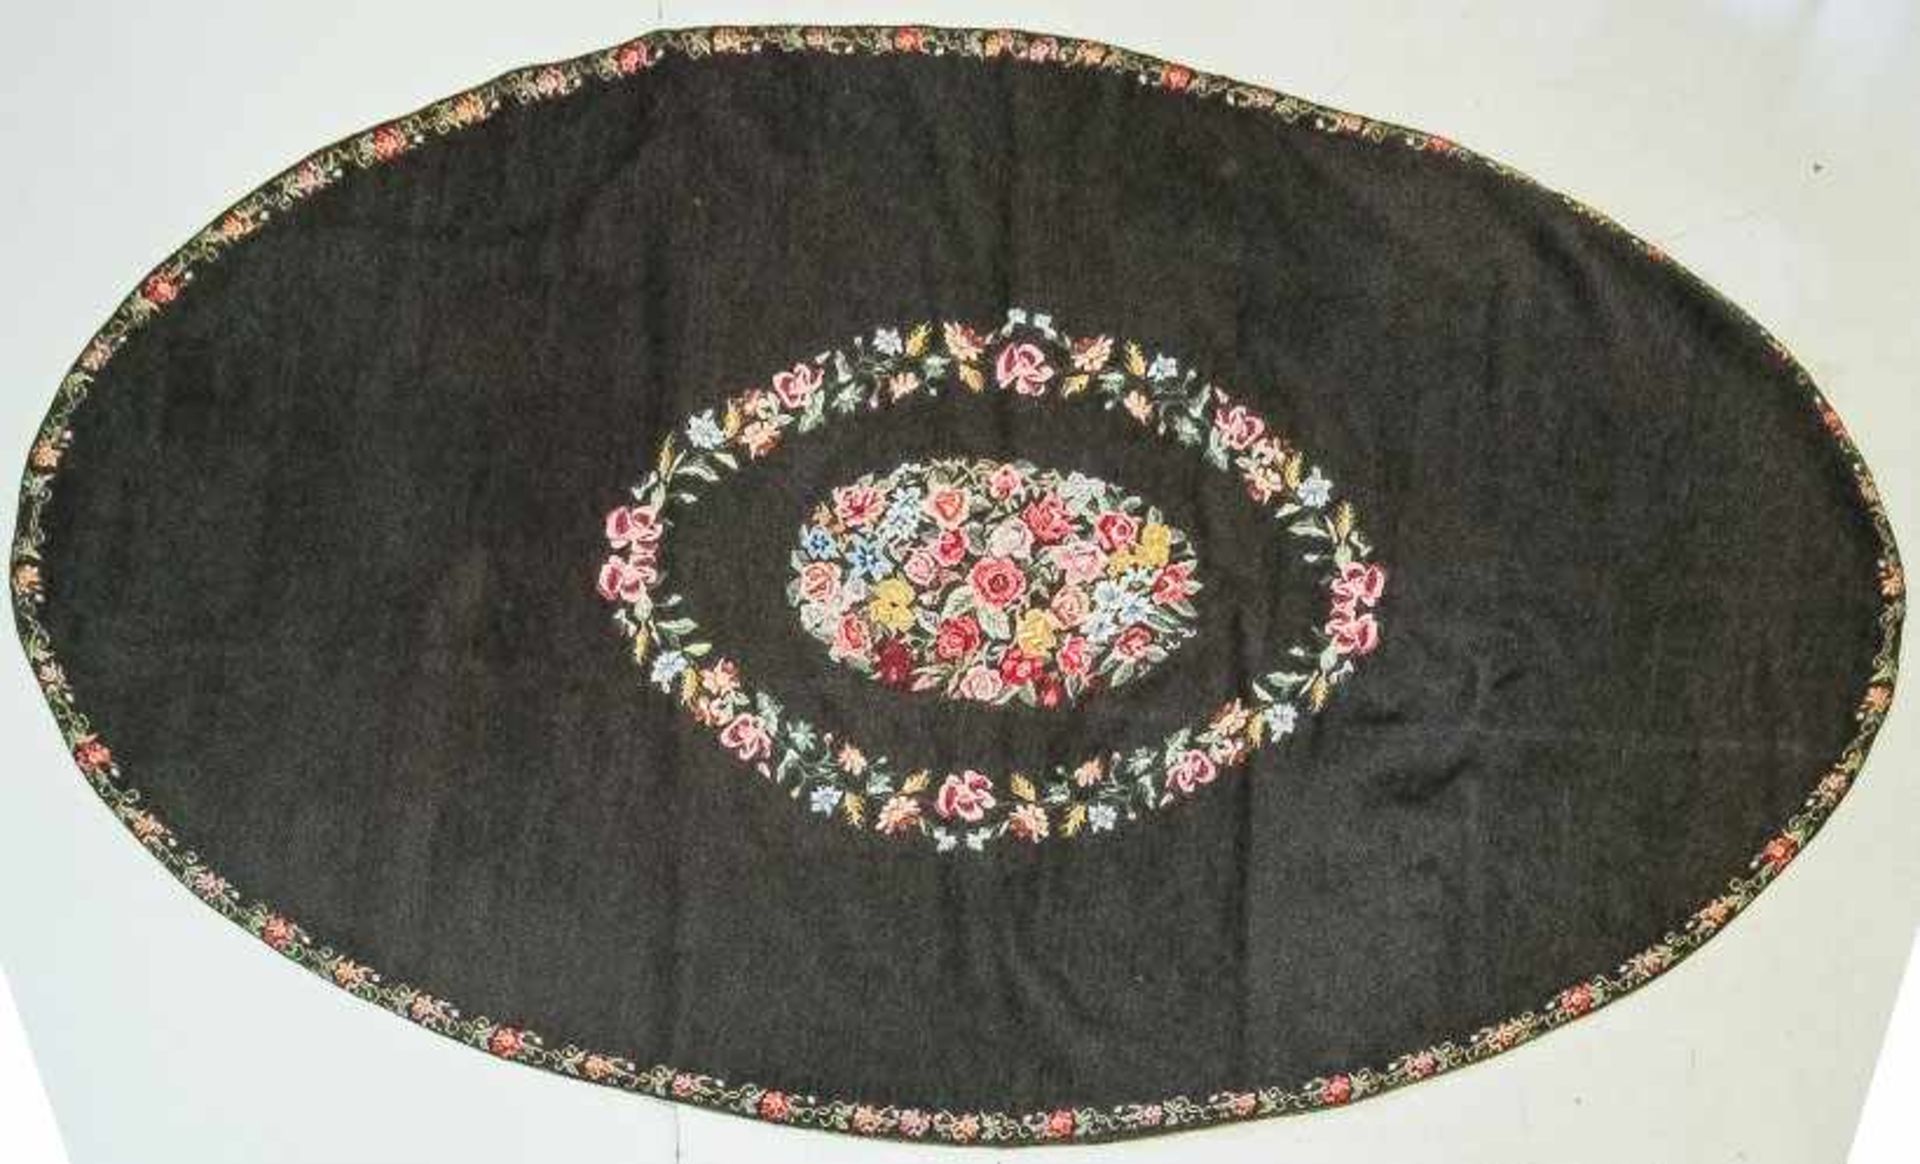 Ovale Deckemit bunter Gros-Point-Stickerei auf schwarzem Grund. Leuchtender Blumendekor aus